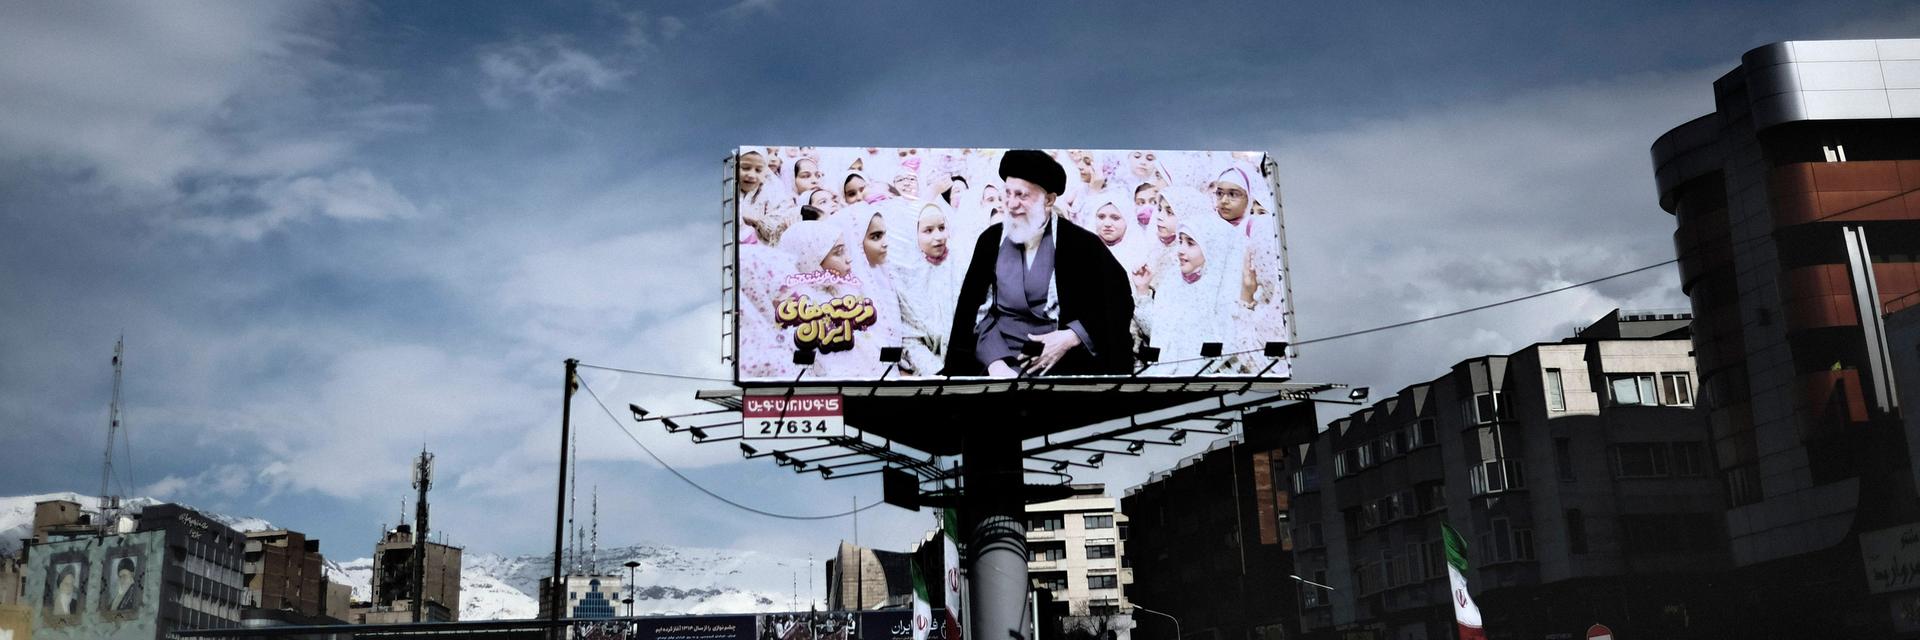 Vor blauem Himmel steht in Teheran eine Werbetafel mit dem religiösen Führer des Landes, Ayatollah Ali Khamenei.